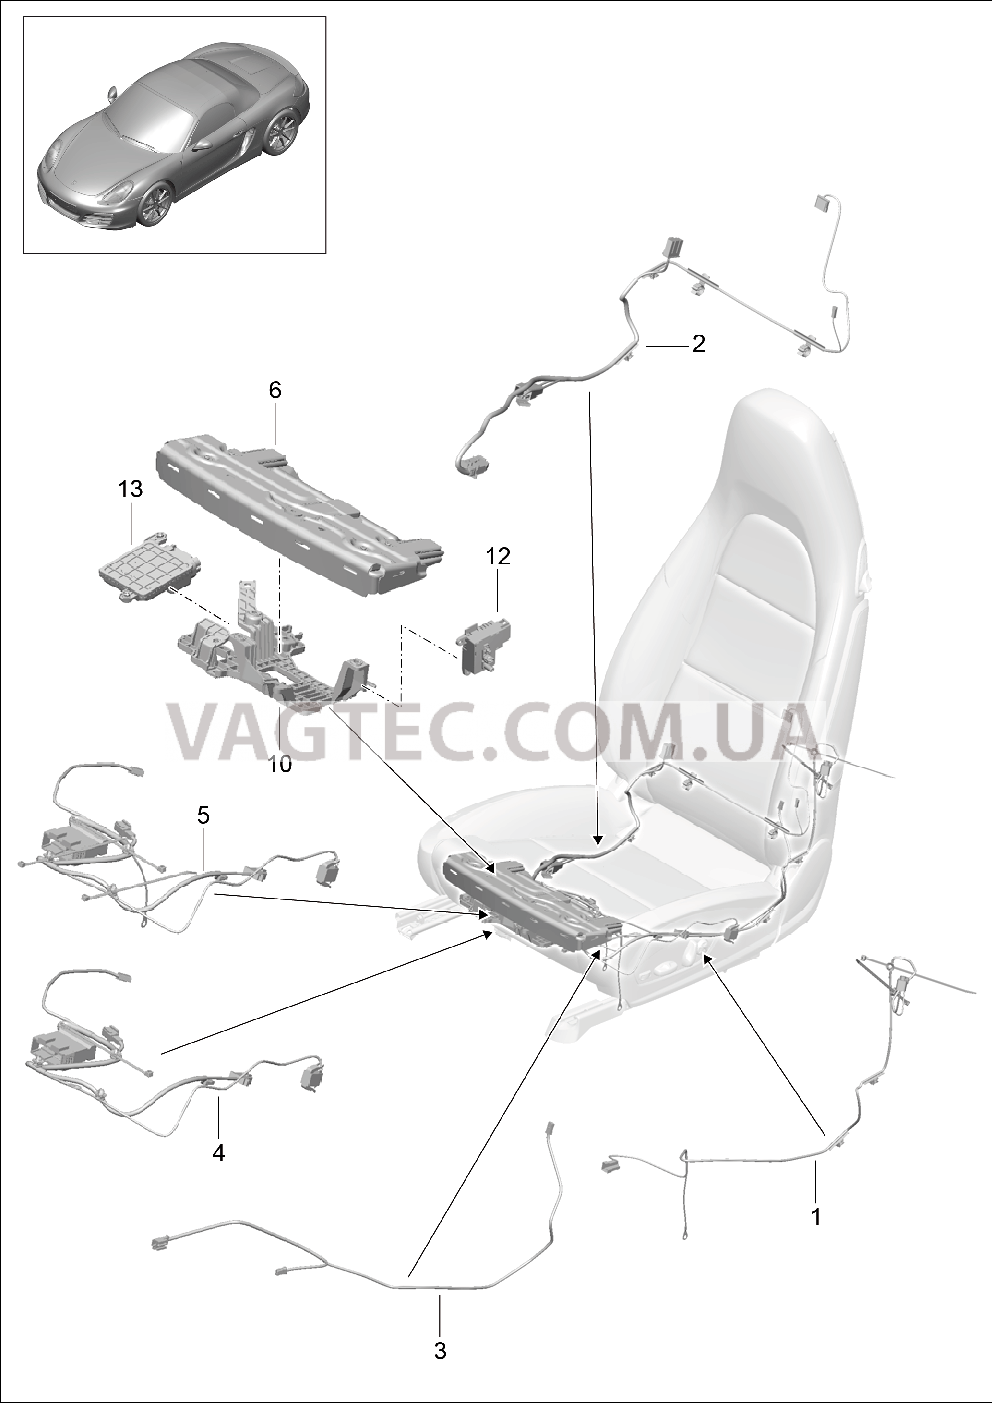 817-025 Жгуты проводов, Выключатель, Блок управления, Электродвигатель, Спортивное сиденье для PORSCHE Cayman 2014-2016USA